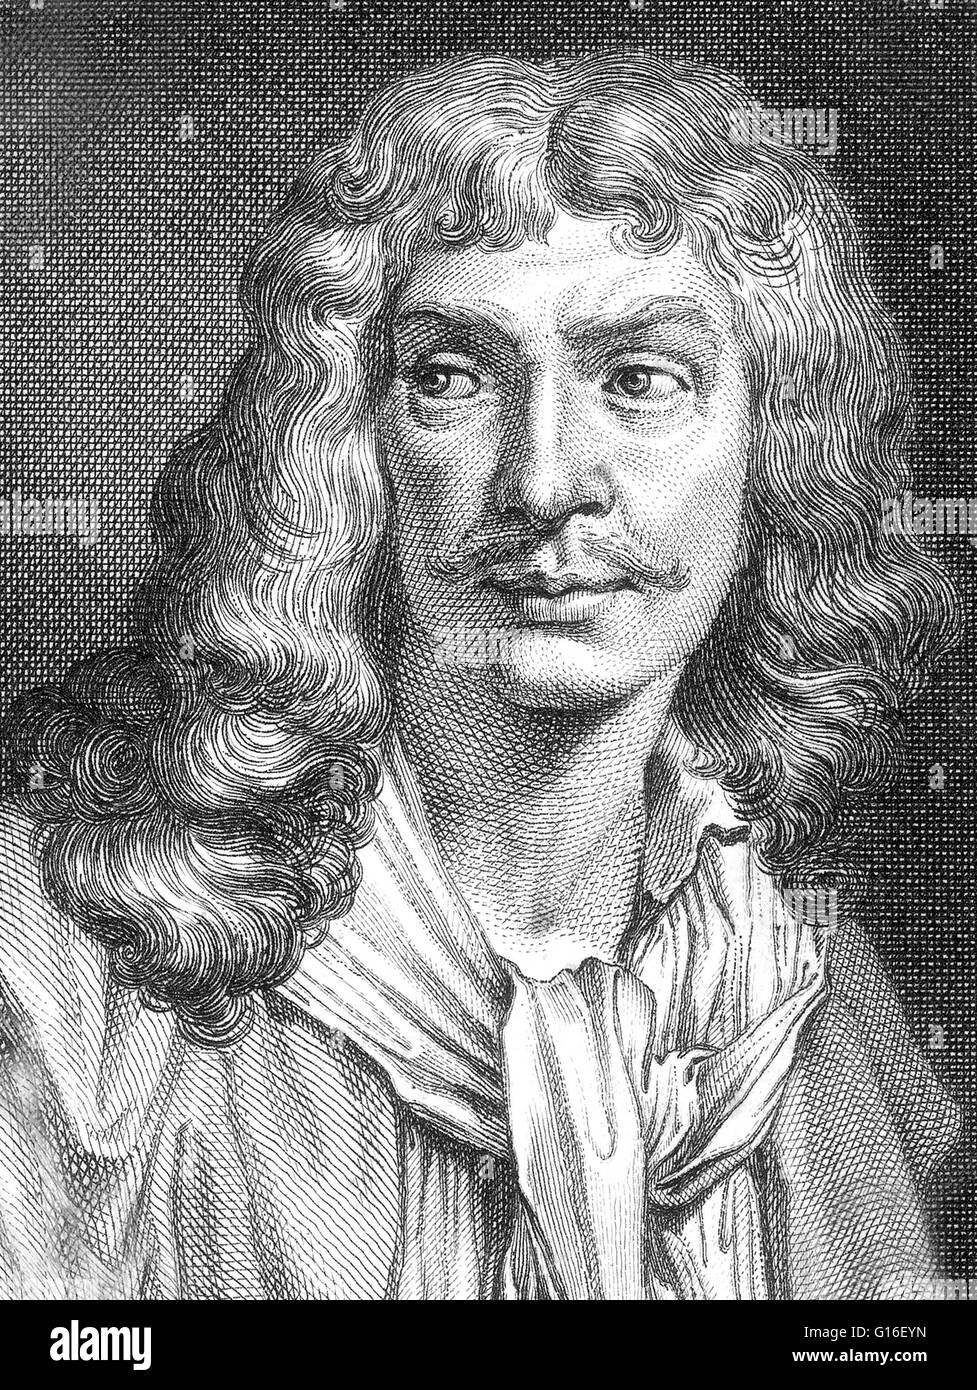 Jean-Baptiste Poquelin, connu sous le nom de Molière (janvier 15,1622 -  Février 17,1673) était un acteur et dramaturge français qui est considéré  comme l'un des plus grands maîtres de la comédie dans